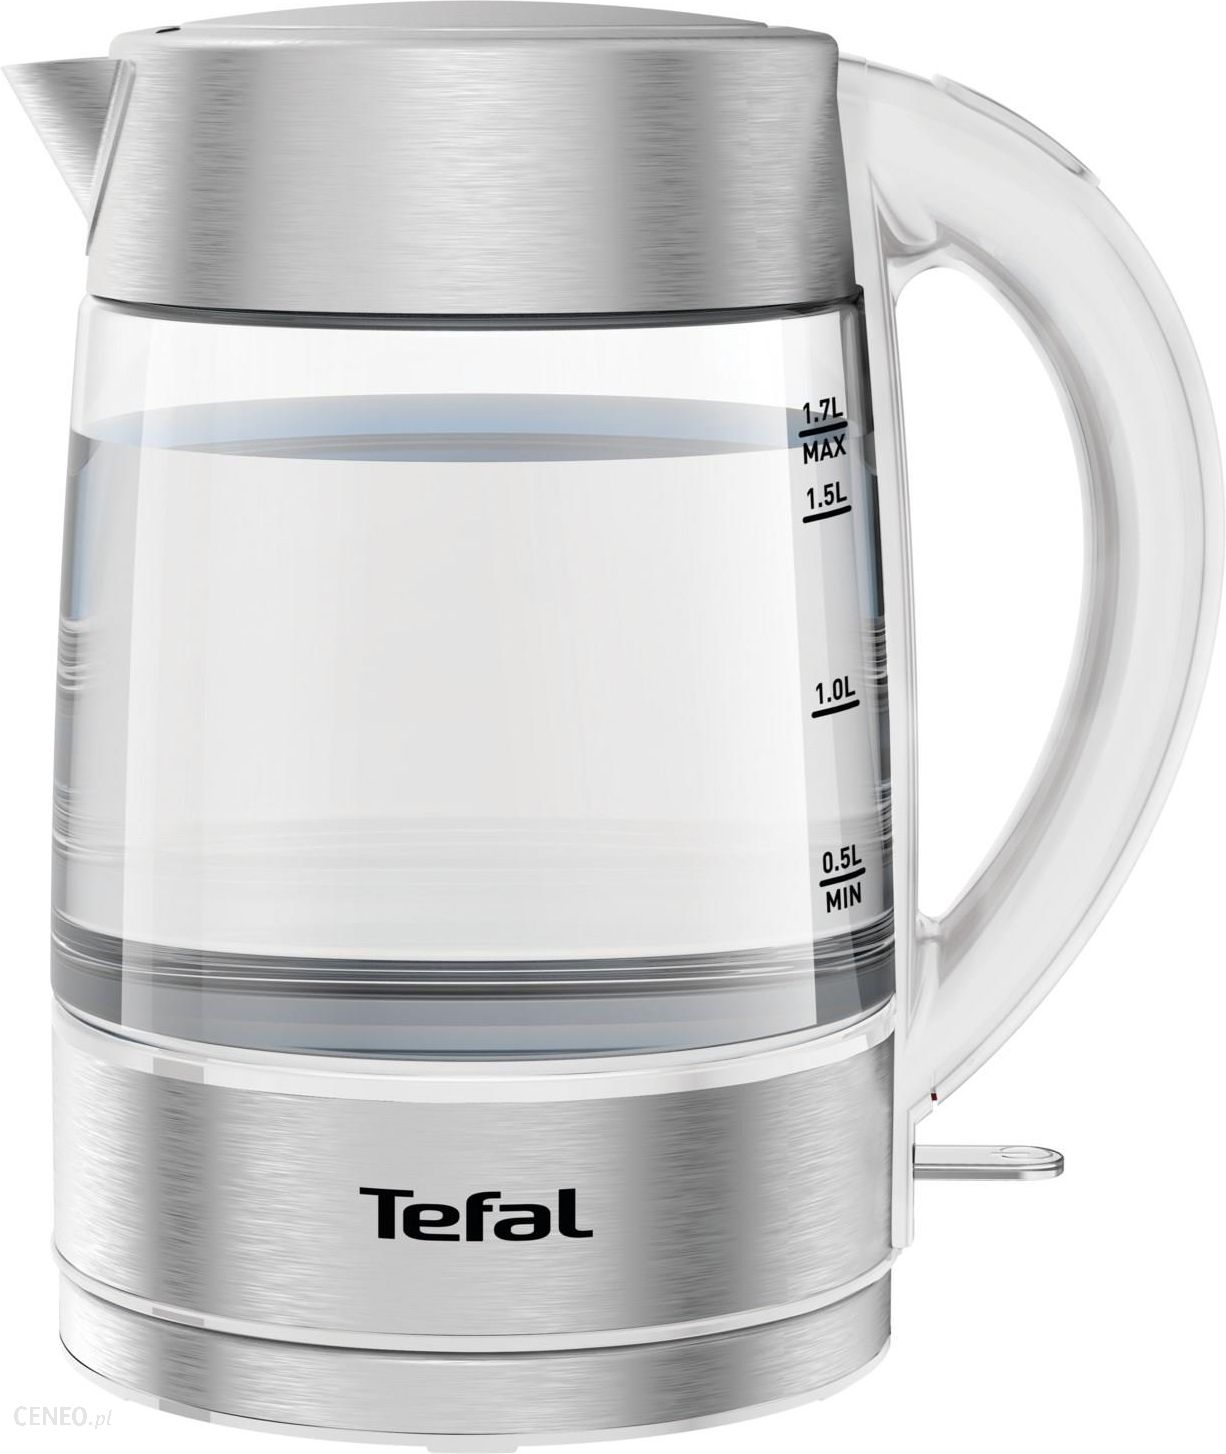 Electric kettle GLASS KI772D38 1,7 l, Tefal 